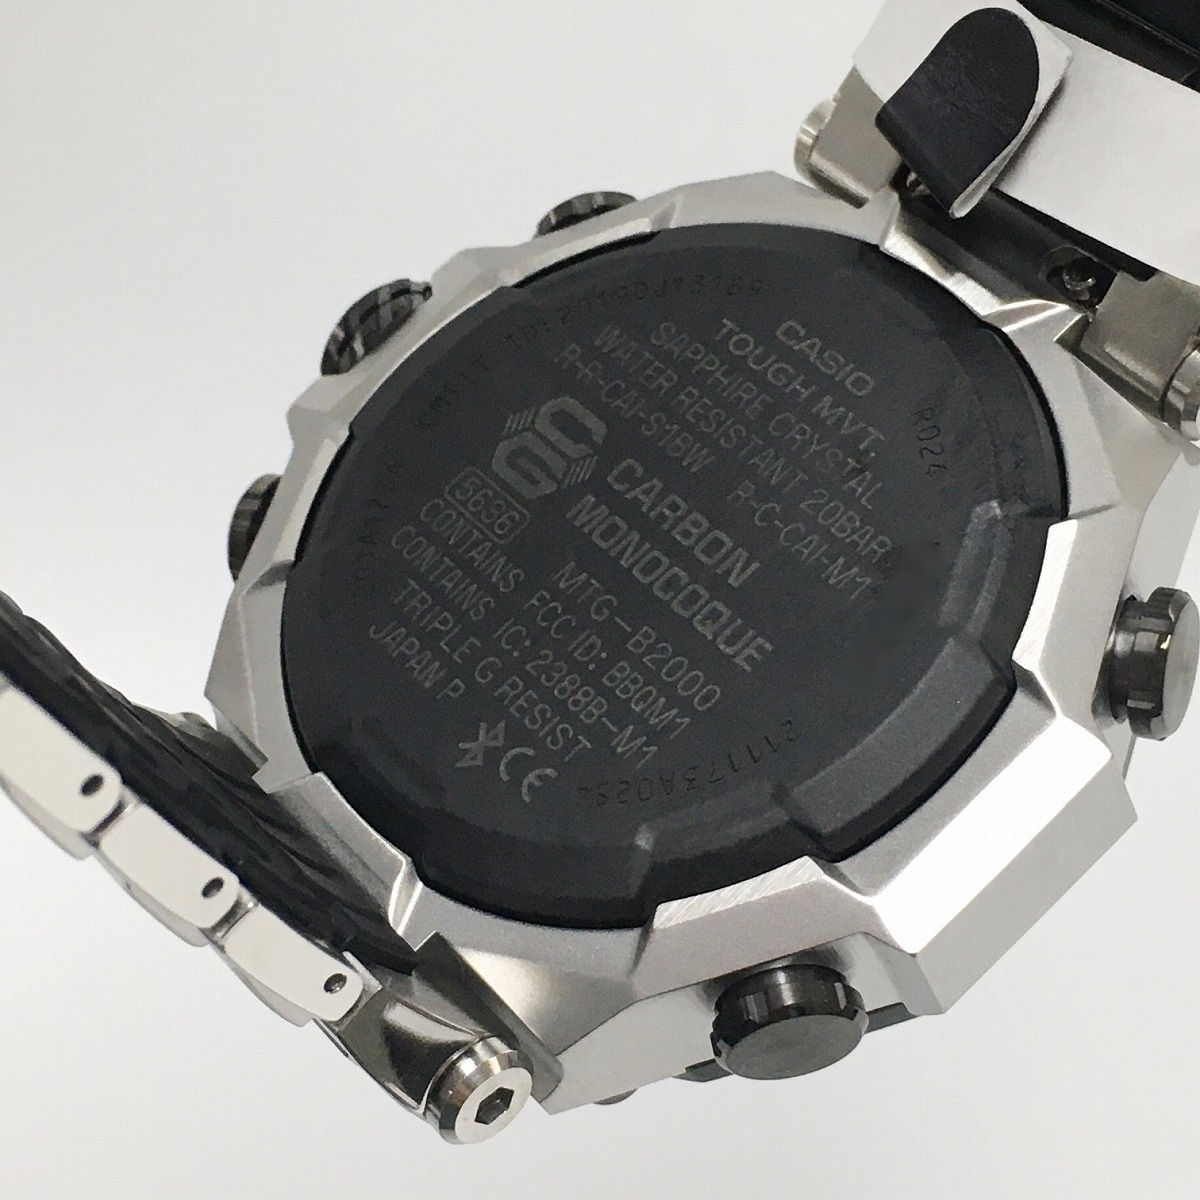 CASIO G－SHOCK 腕時計 MTG-B2000XD-1AJF MT-G デュアルコアガード